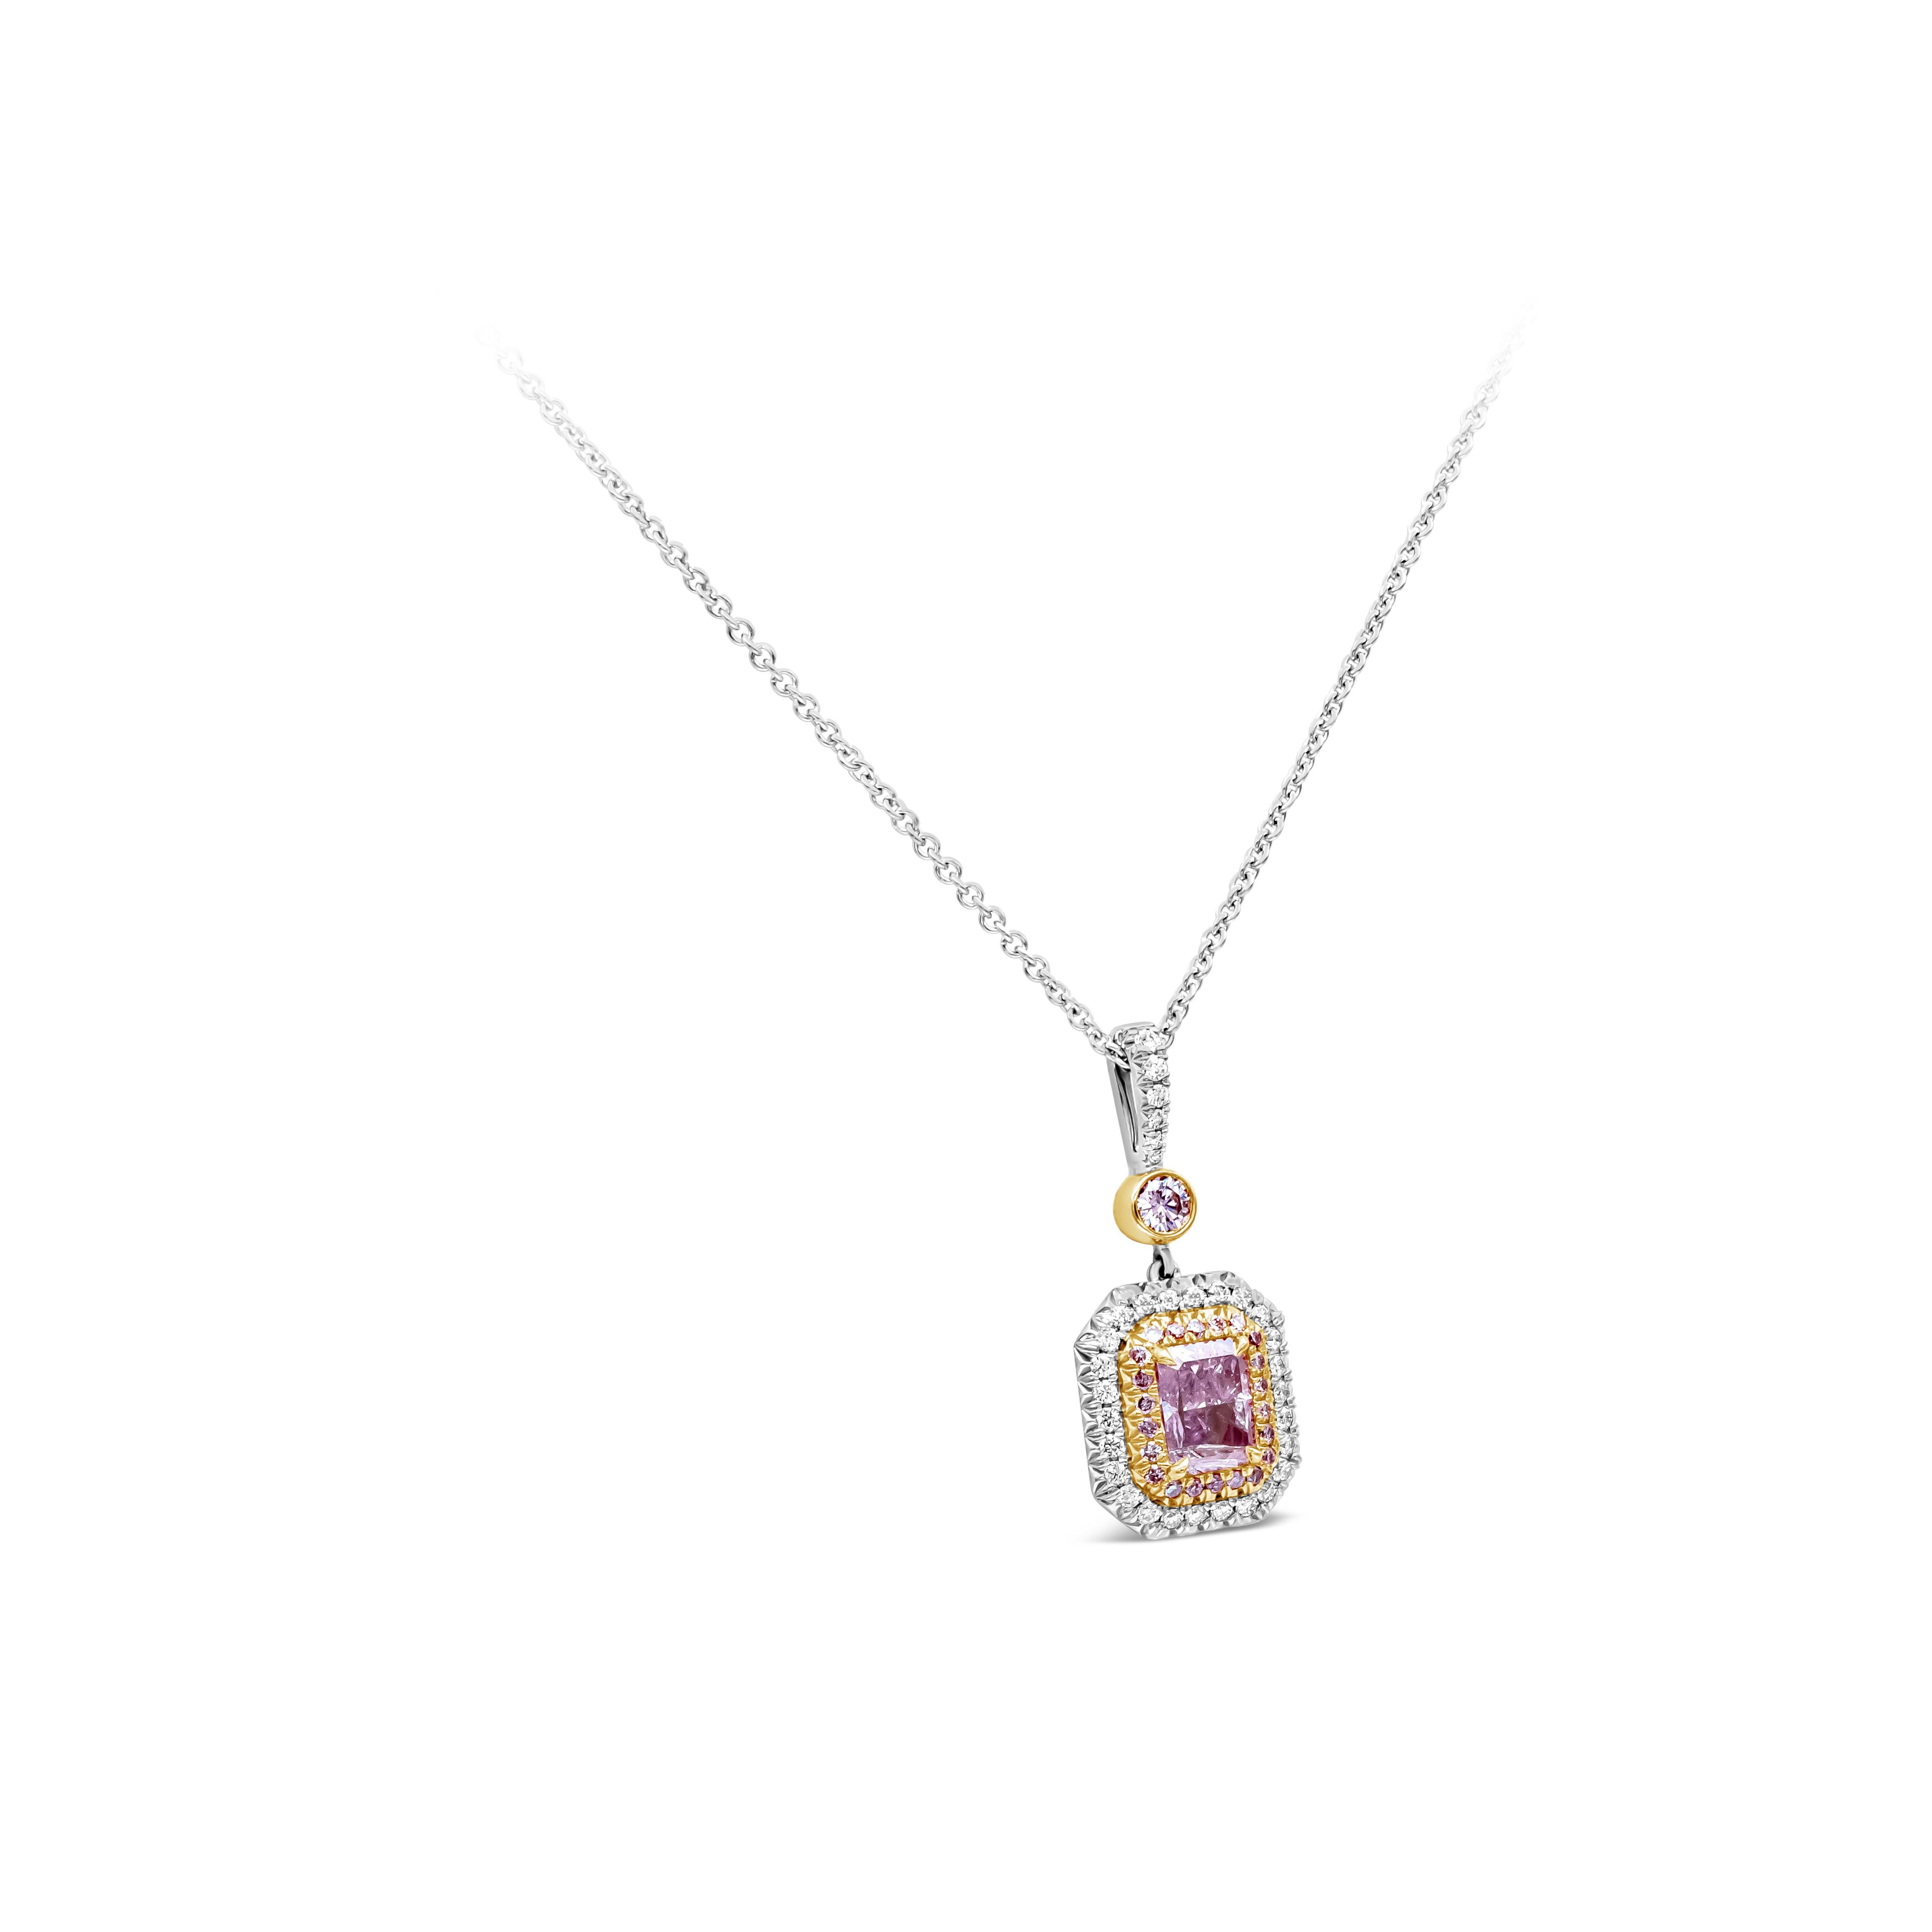 Ce magnifique collier pendentif mettant en valeur un diamant certifié GIA de 1,01 carat de taille radiant de couleur rose pourpre fantaisie est entouré d'un double halo. Le halo intérieur comporte 22 diamants roses ronds pesant 0,11 carat. Le halo